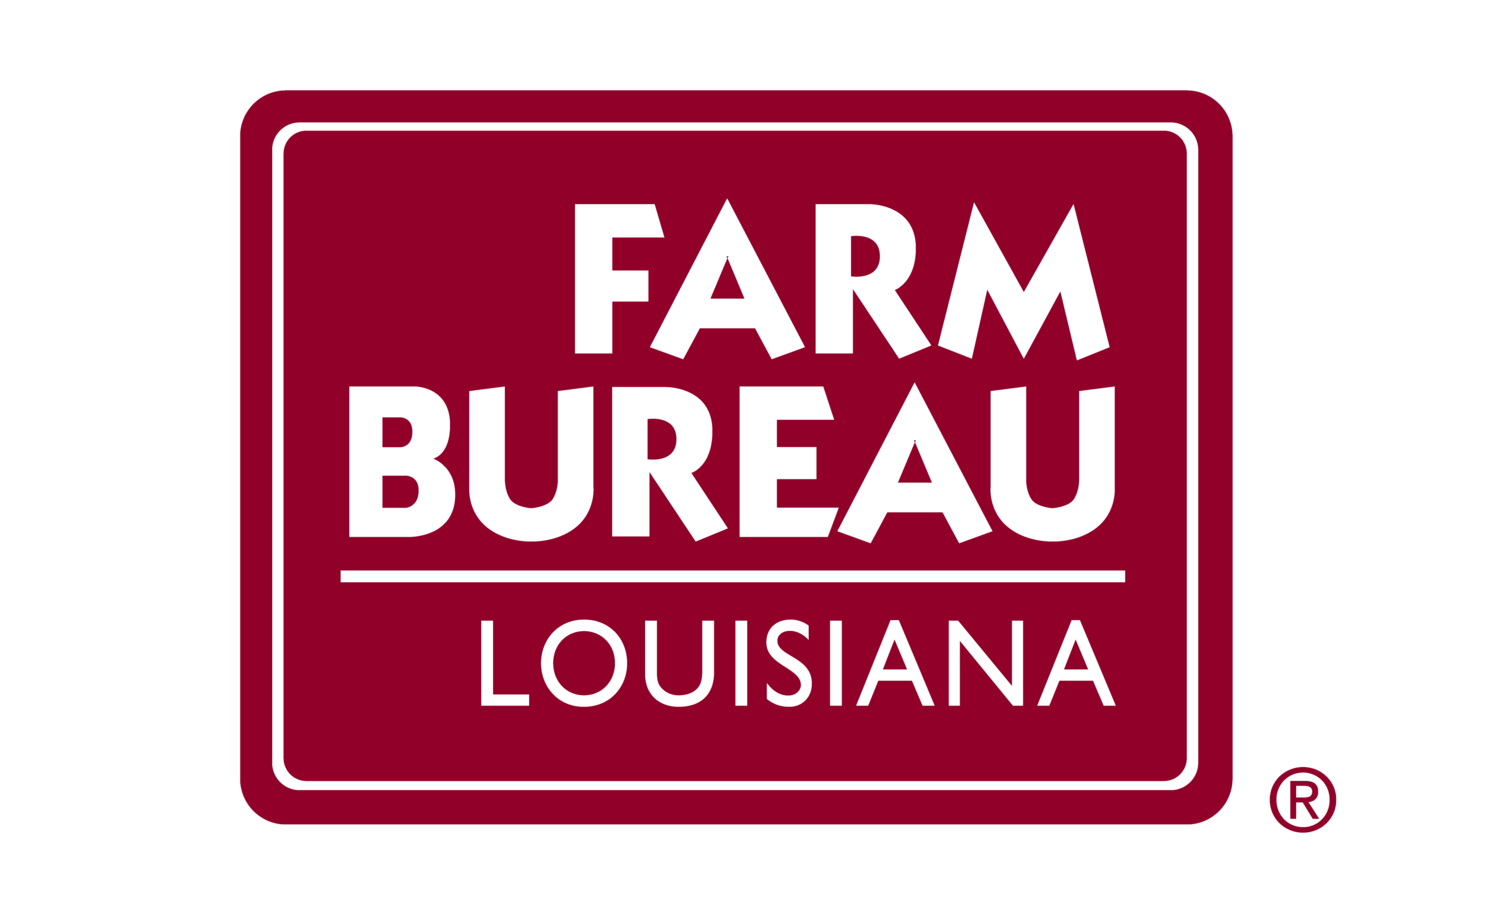 Louisiana Farm Bureau Federation